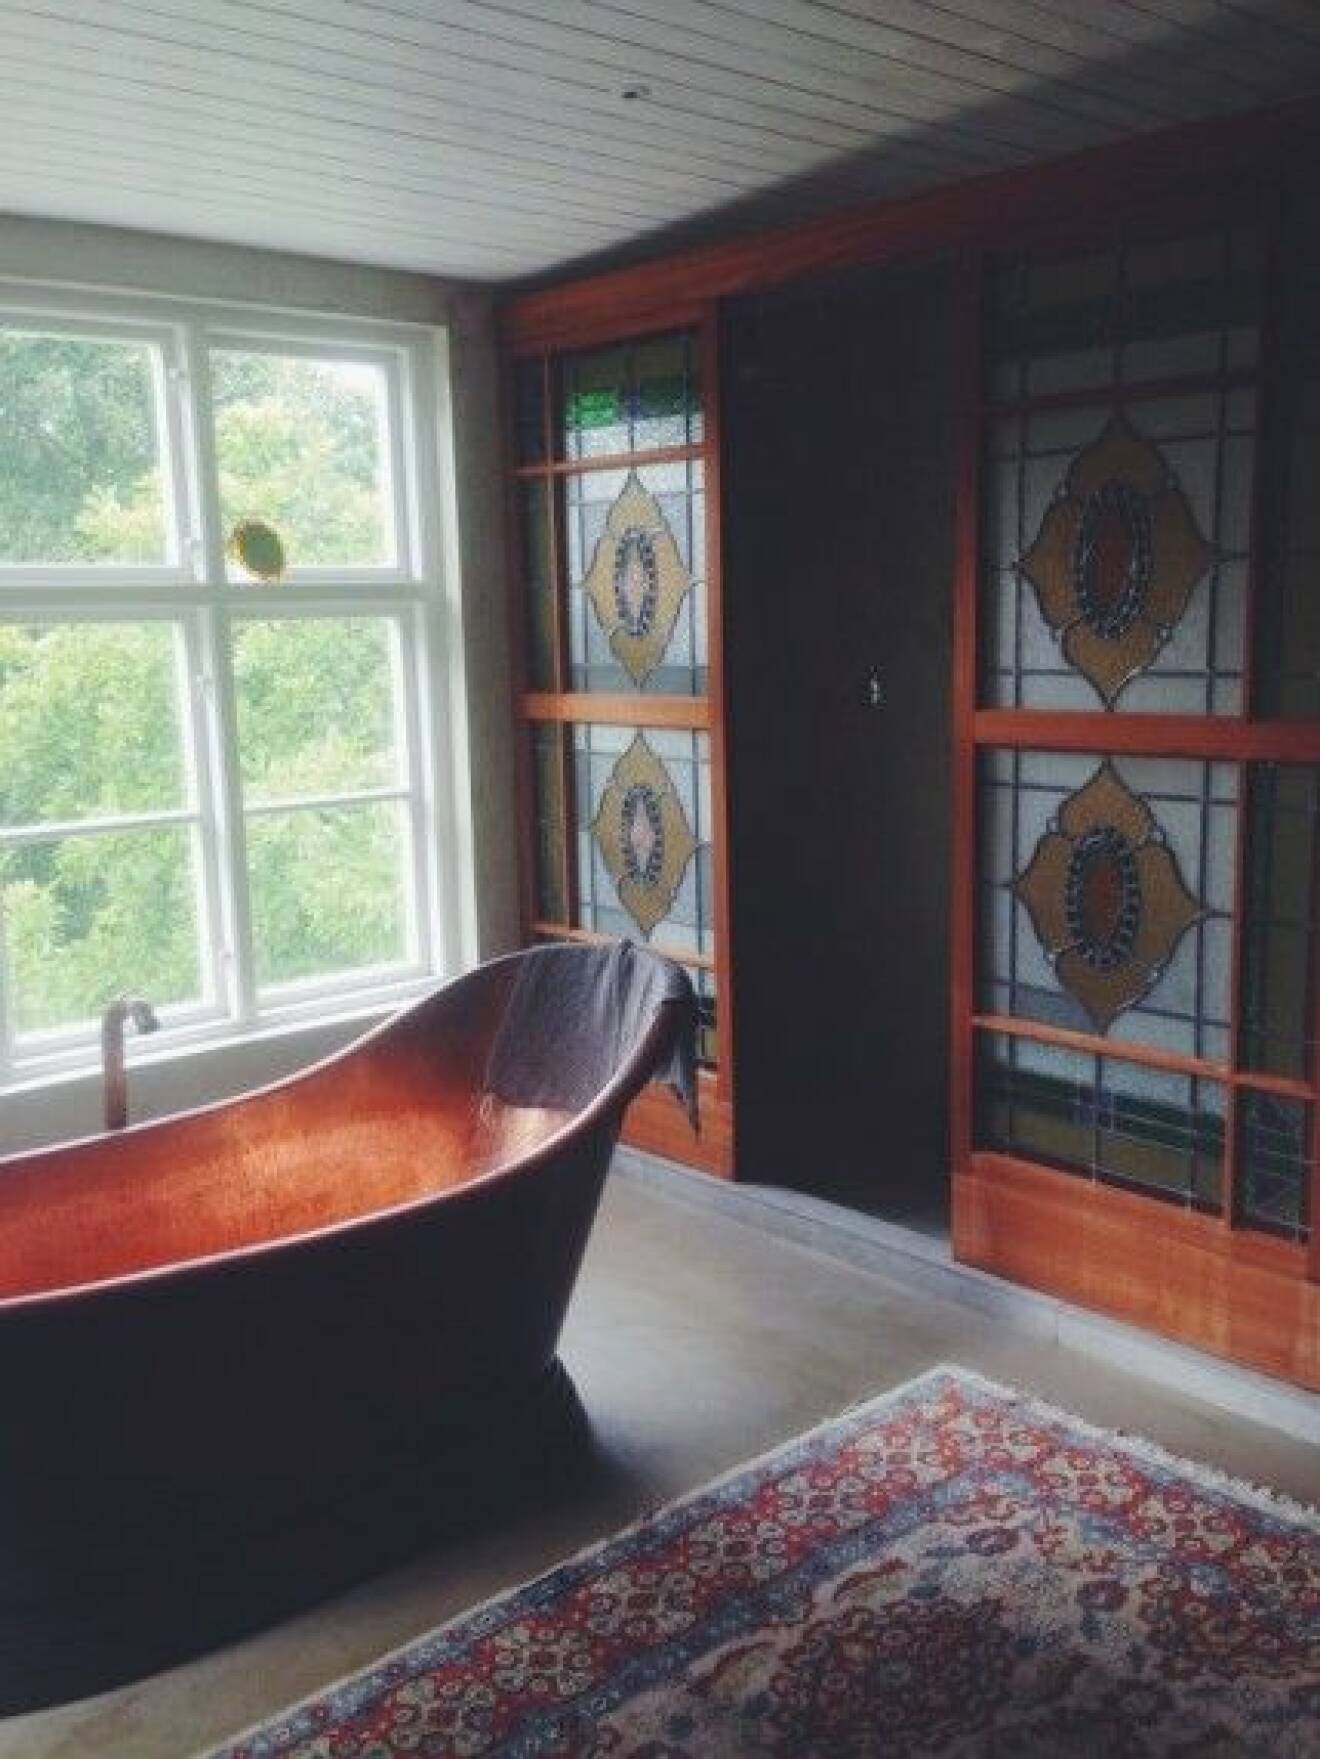 malin persson badrum ett rum till blogg kopparbadkar